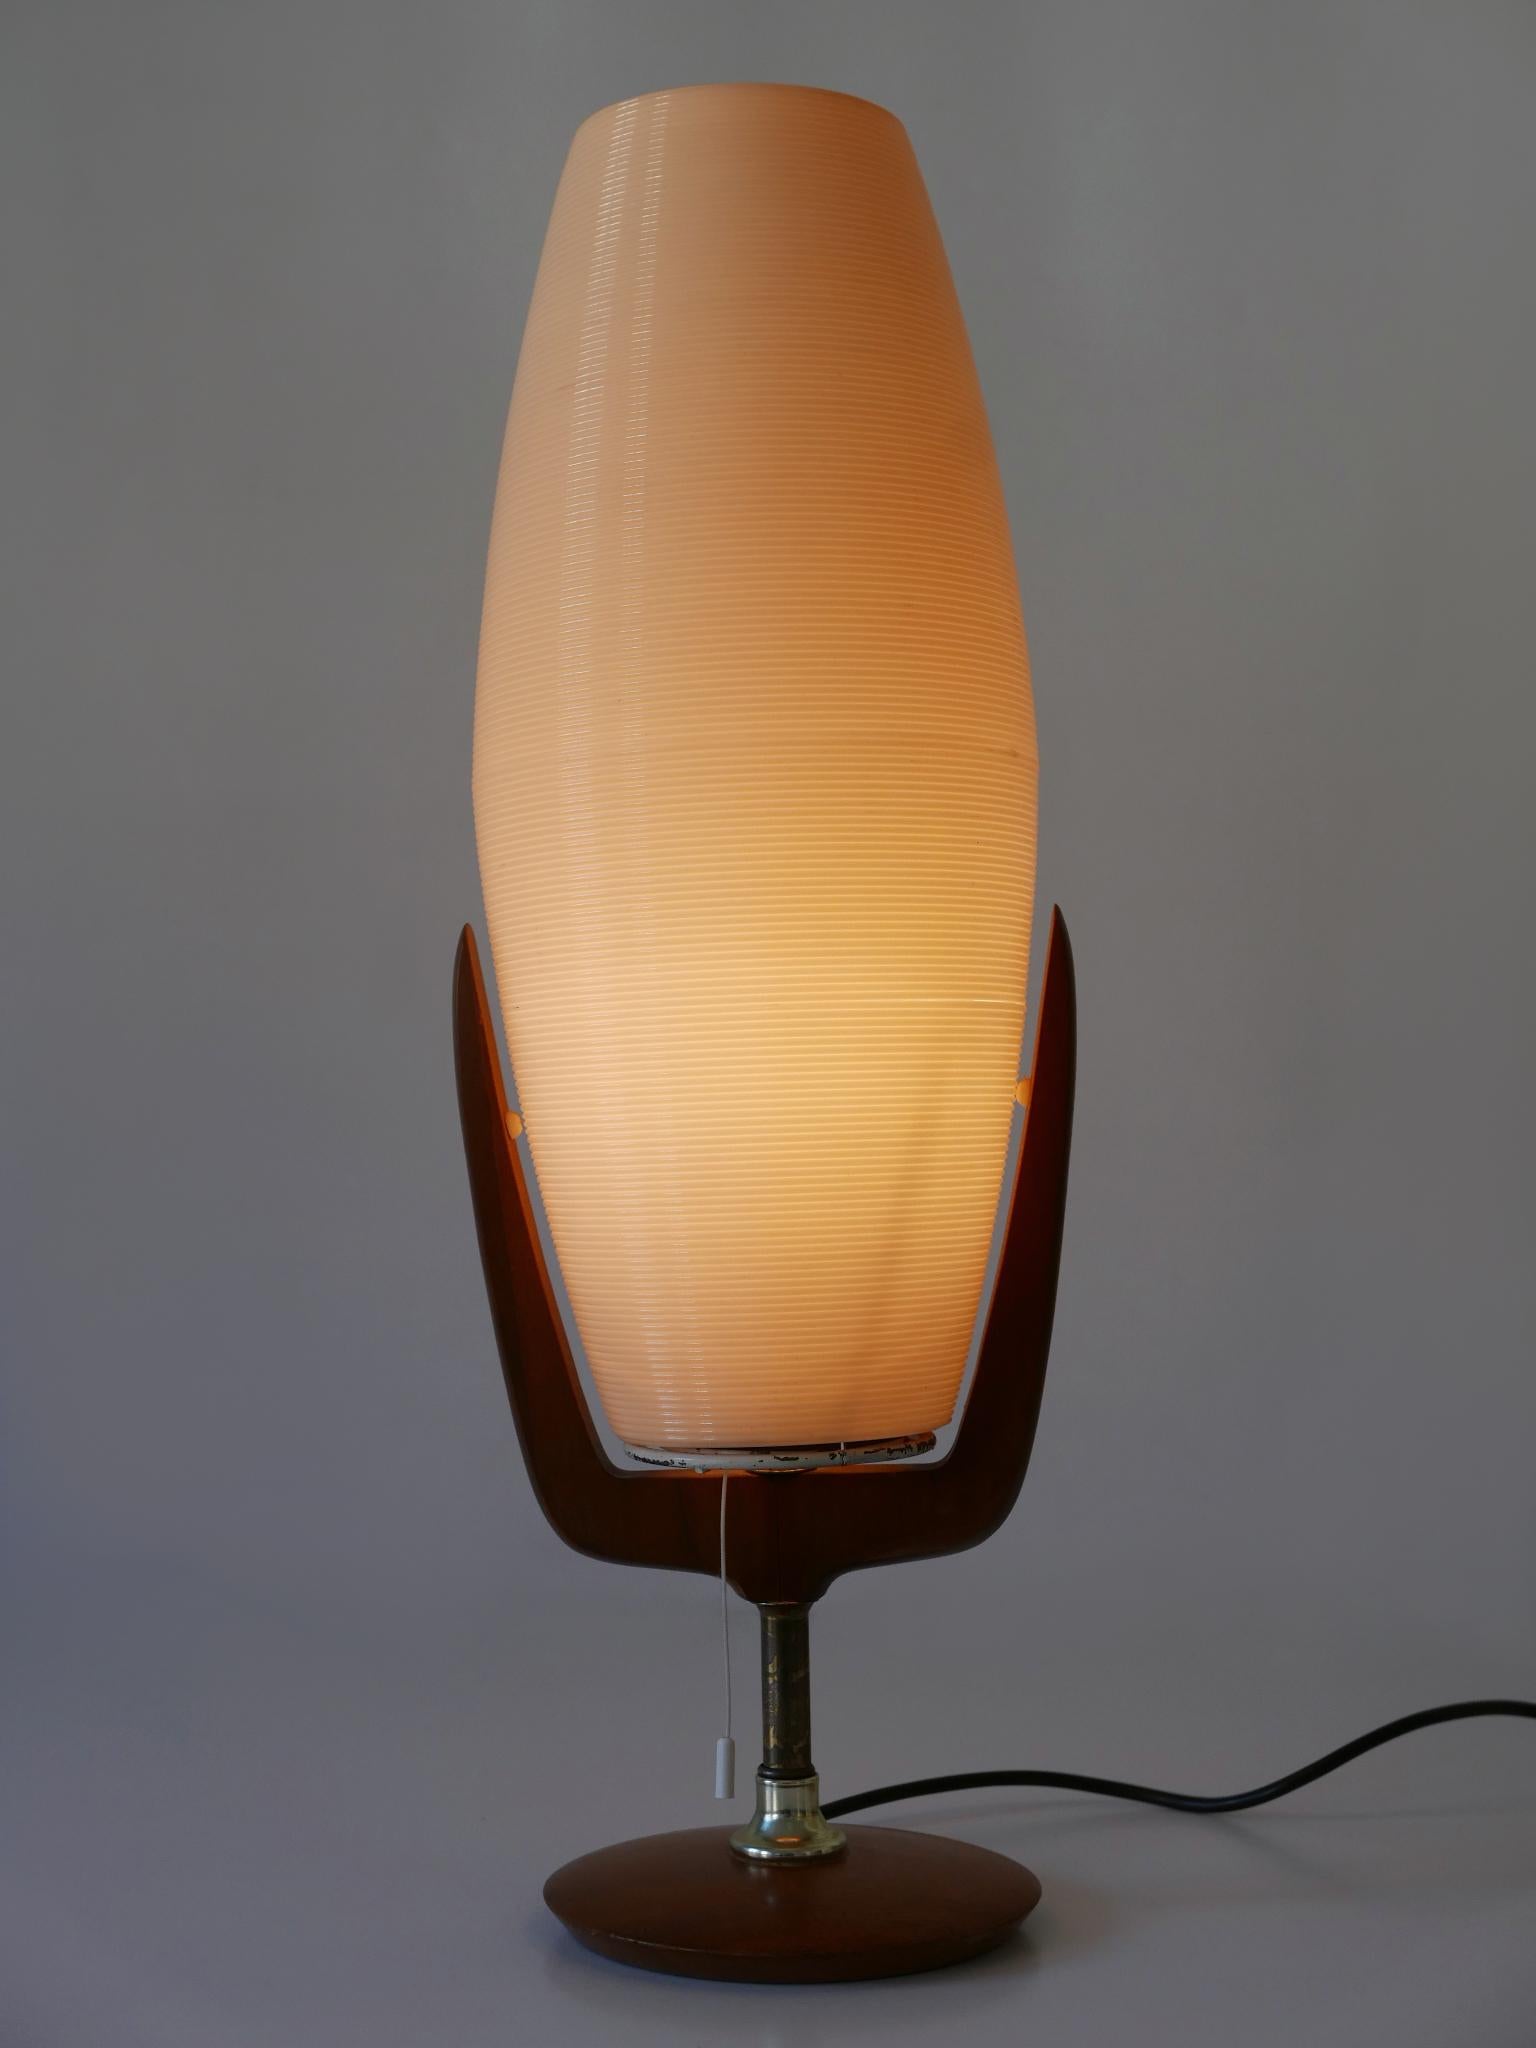 Grande, rare et très décorative lampe de table Modern-Decor. Conçu et fabriqué par Yasha Heifetz pour Heifetz Manufacturing, États-Unis, années 1950.

Réalisée en plastique, laiton et bois de noyer, la lampe est livrée avec 1 douille E27 / E26